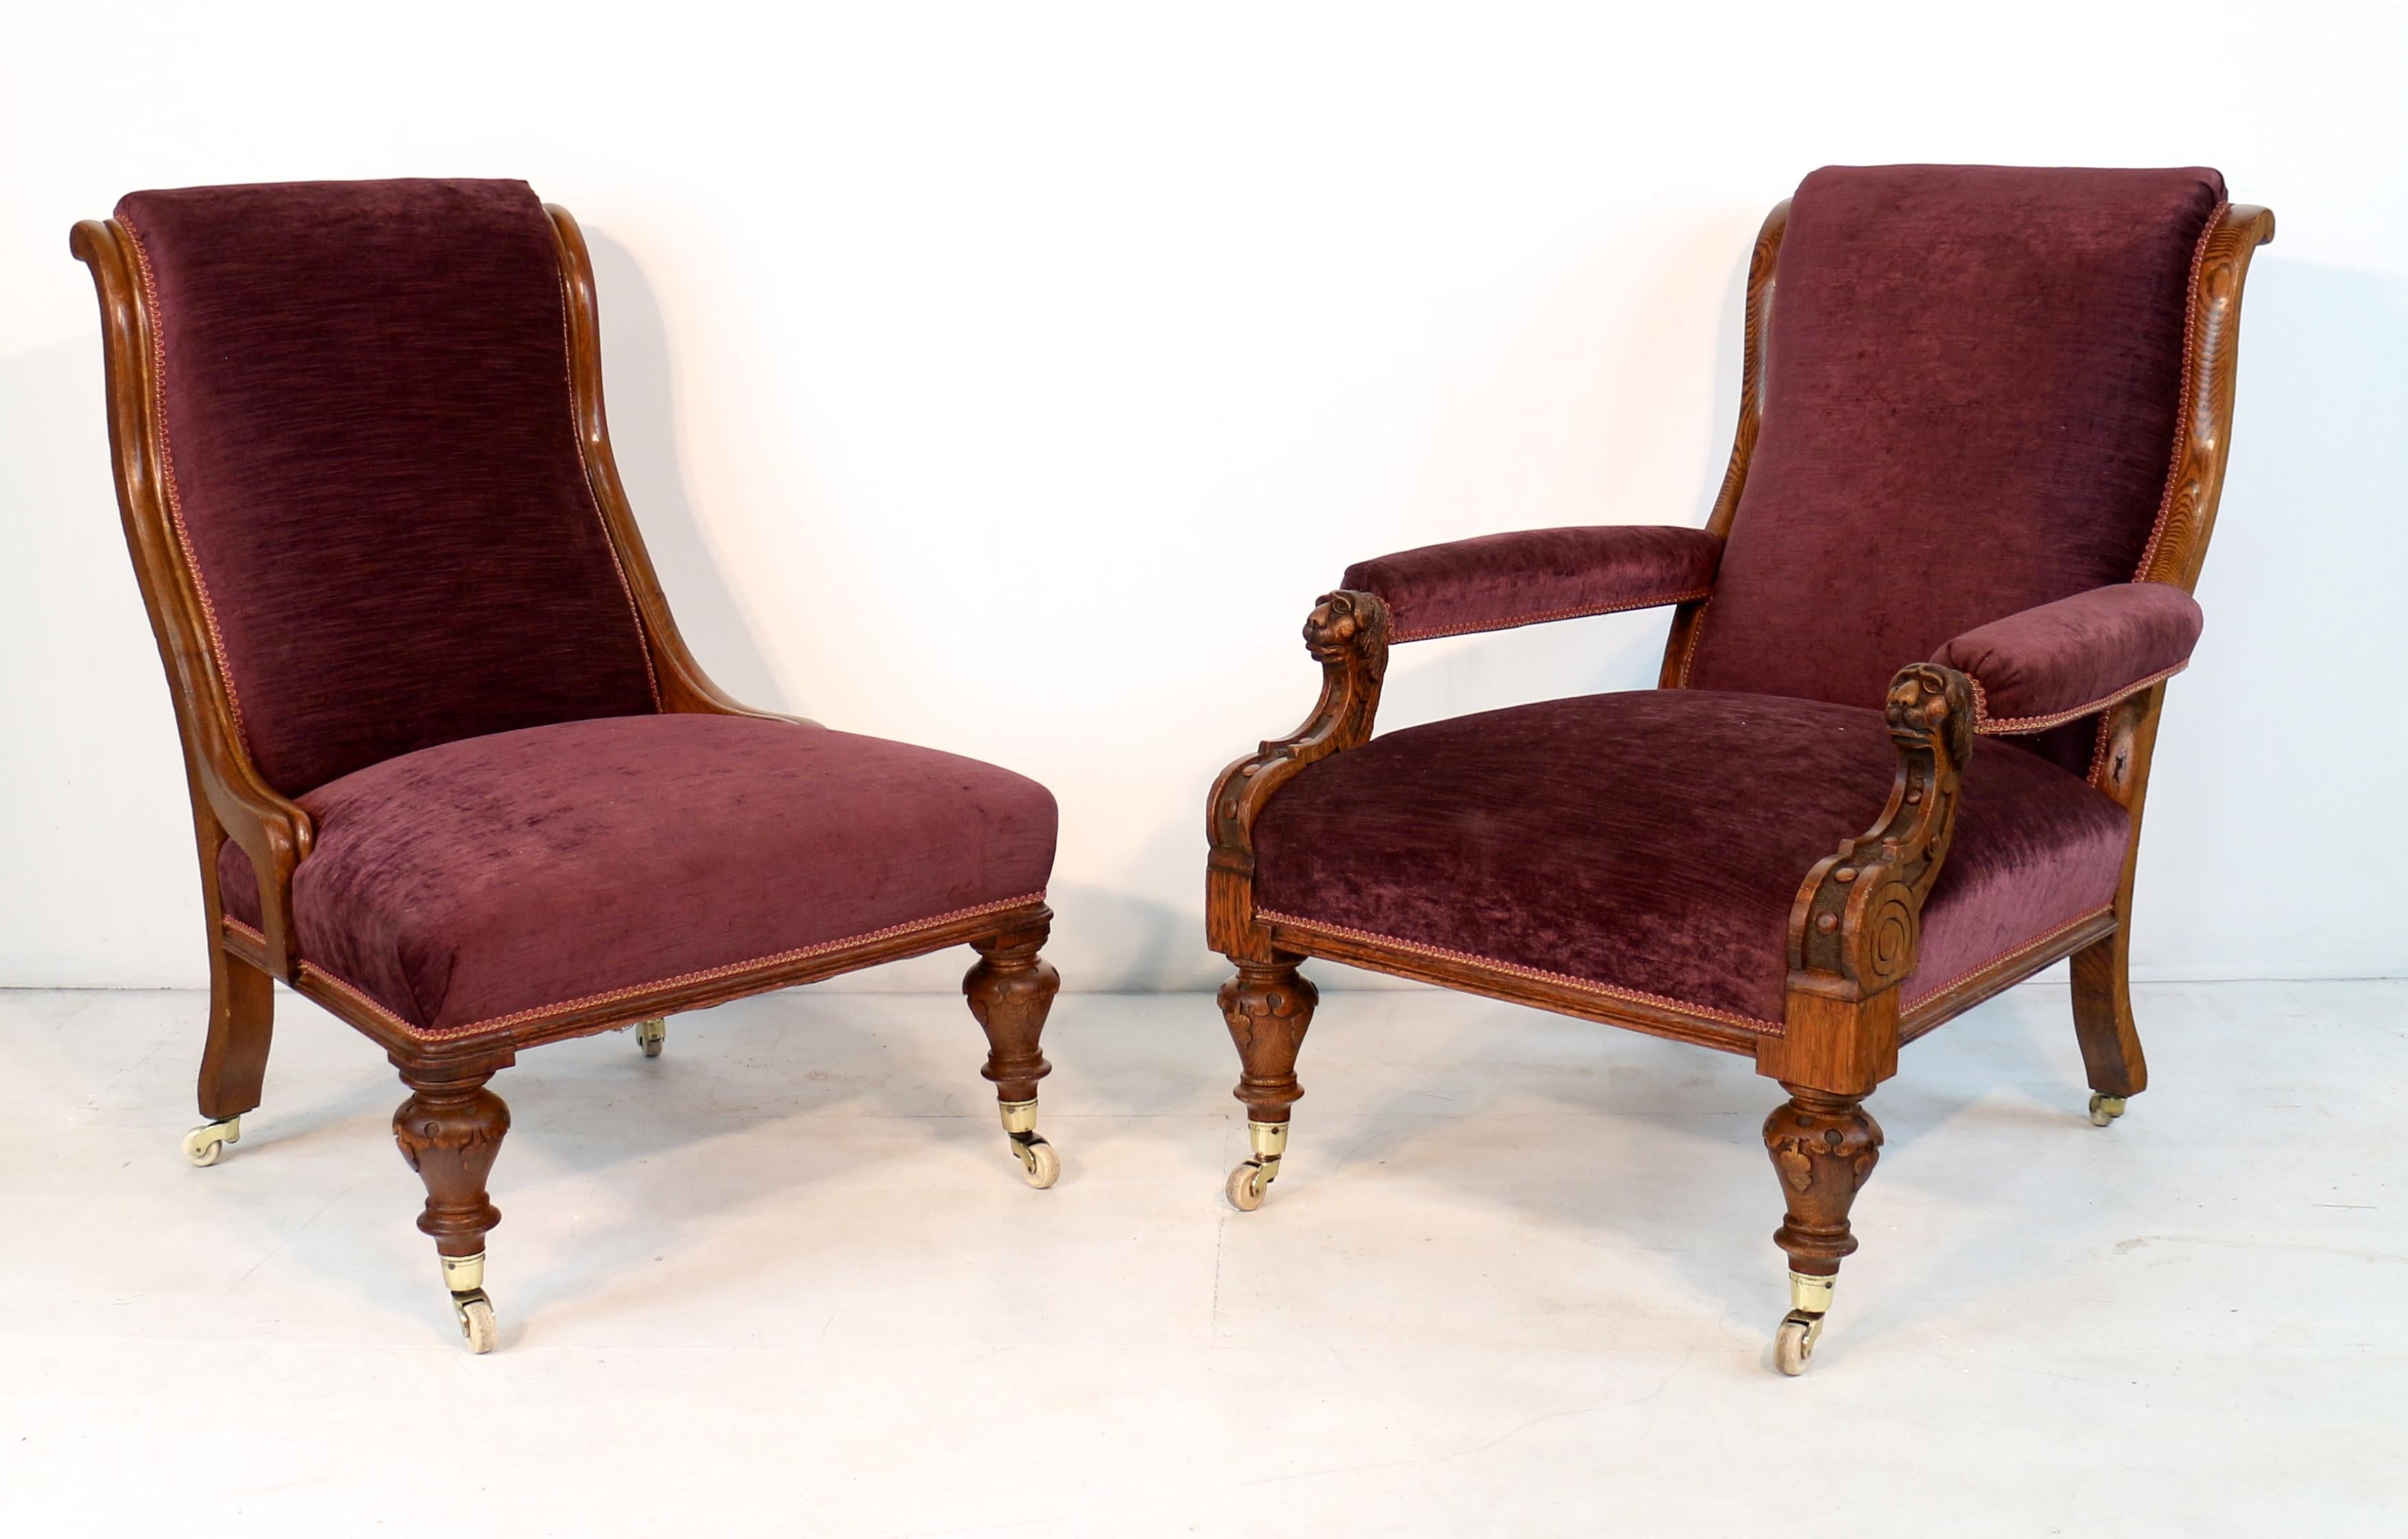 Superbe paire de chaises de bibliothèque victoriennes pour un homme et une femme, vers 1870, le fauteuil pour homme avec des terminaisons en forme de tête de lion sculptées sur les accoudoirs rembourrés, chacun avec un dossier en forme et une assise